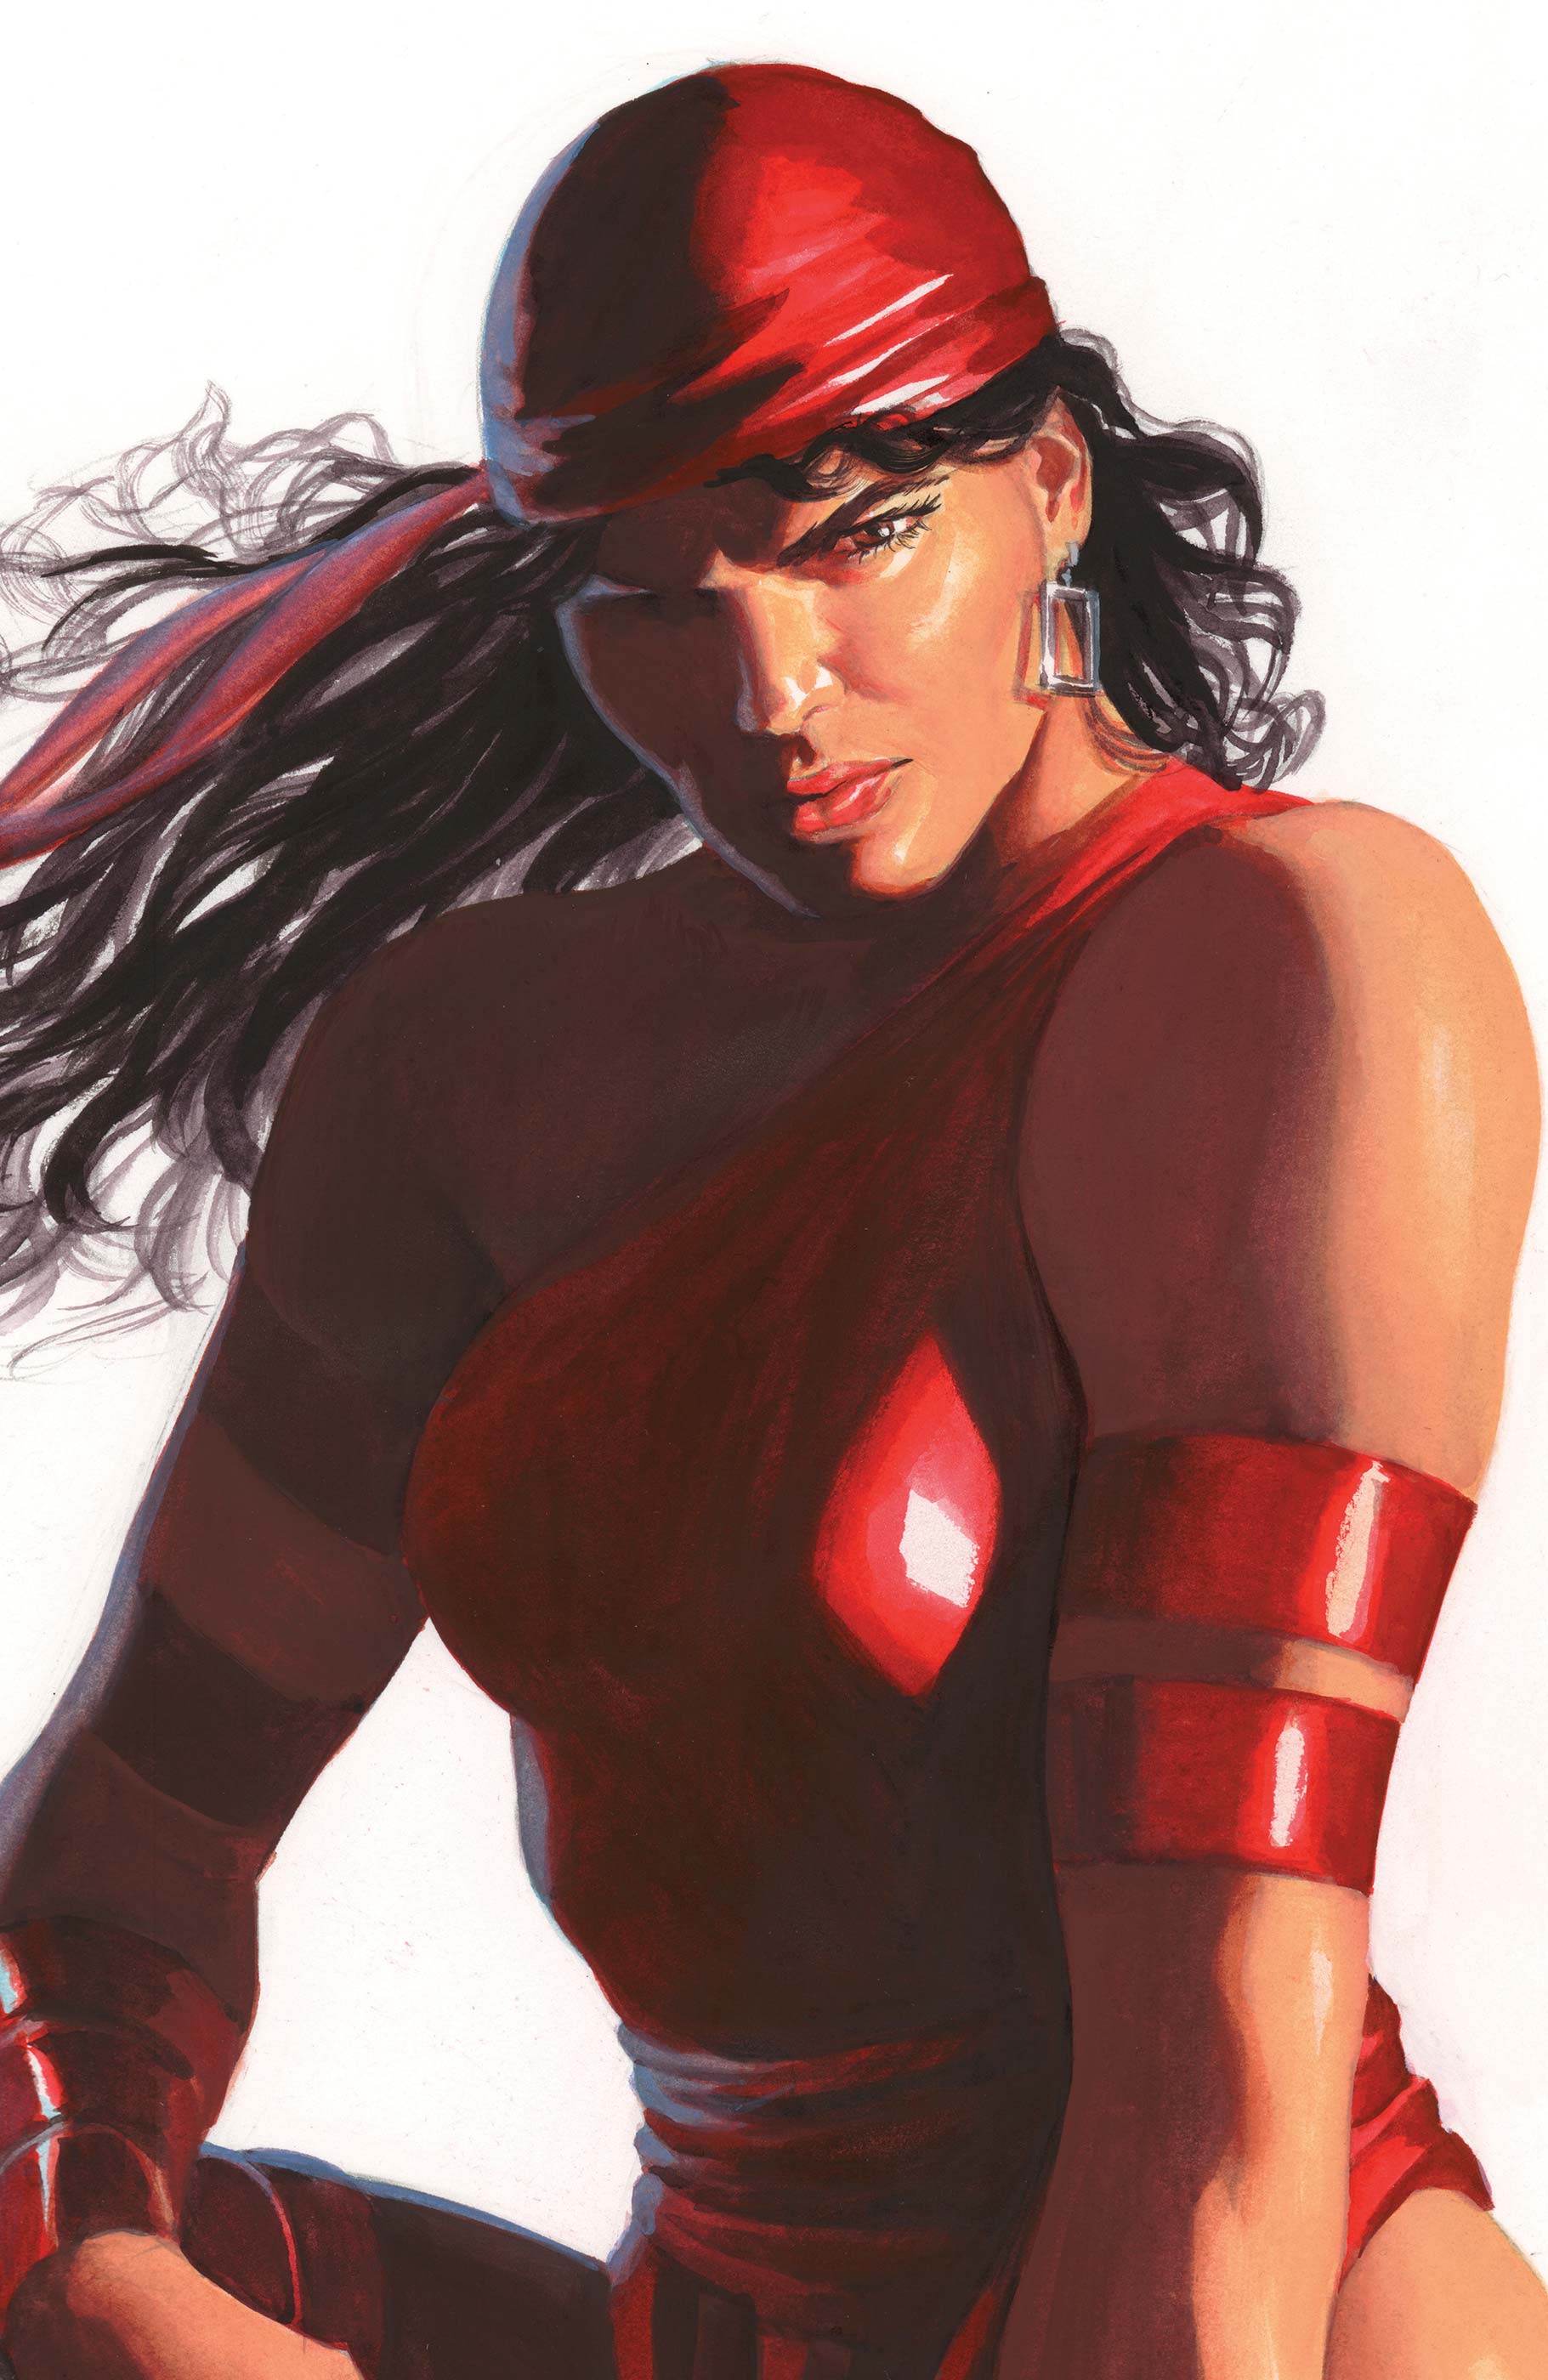 Daredevil (2022) #9 (Variant)